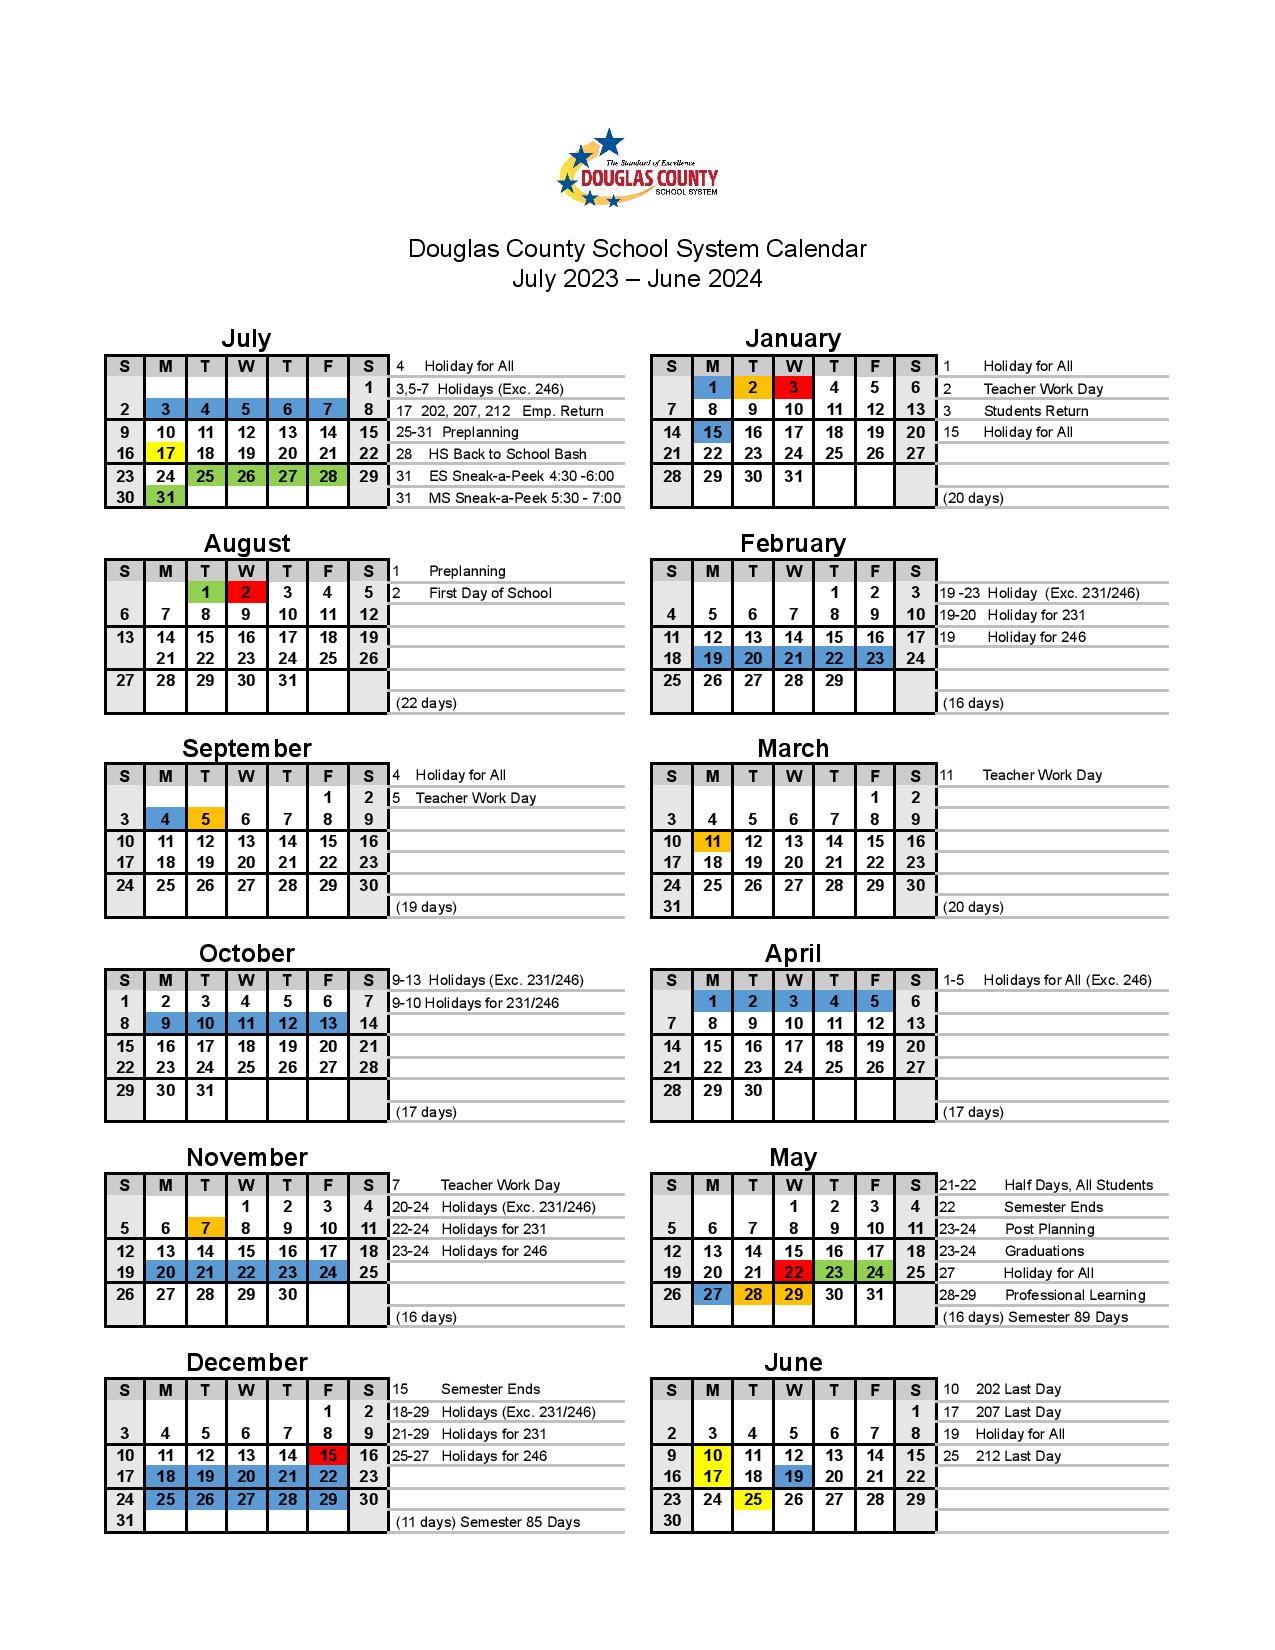 Douglas County Schools Calendar 2023 2024 in PDF